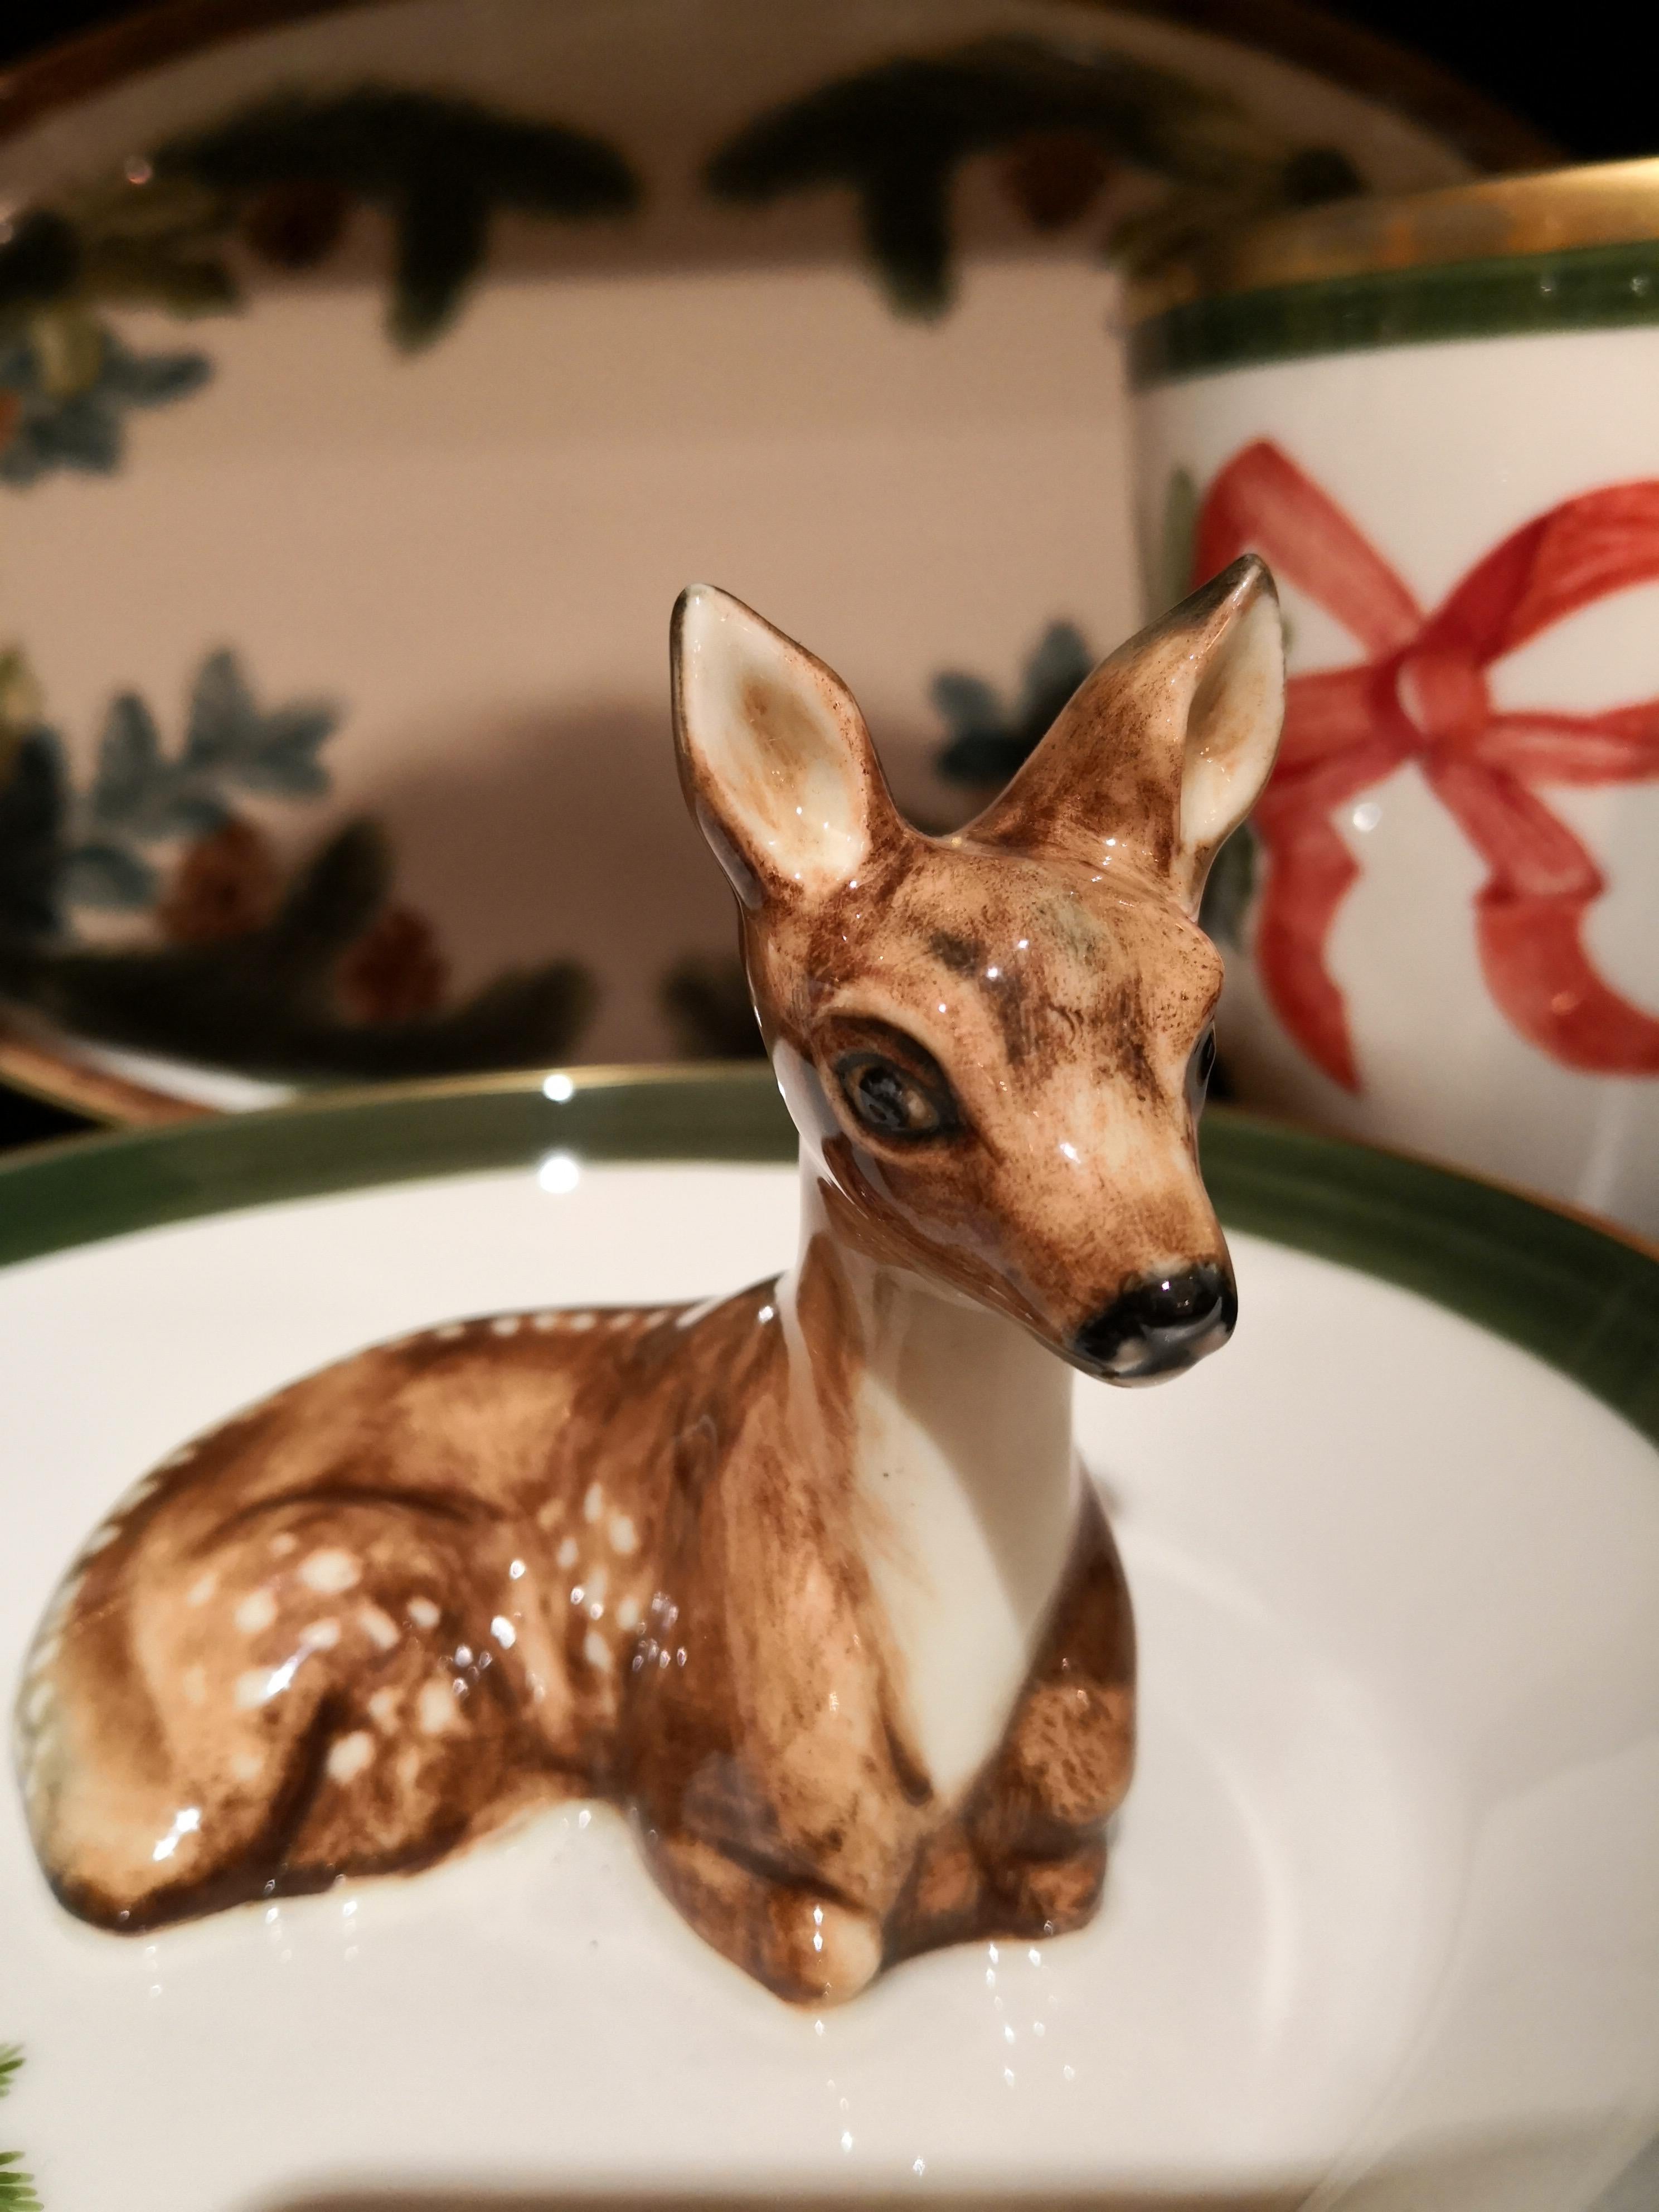 Vollständig handgefertigte Porzellanschale im Stil des Schwarzwaldes mit einer freihändig gemalten naturalistischen Bambi-Figur in Braun. Das Bambi sitzt in der Mitte der Schale, um Nüsse oder Süßigkeiten zu dekorieren. Umrandet mit einer feinen